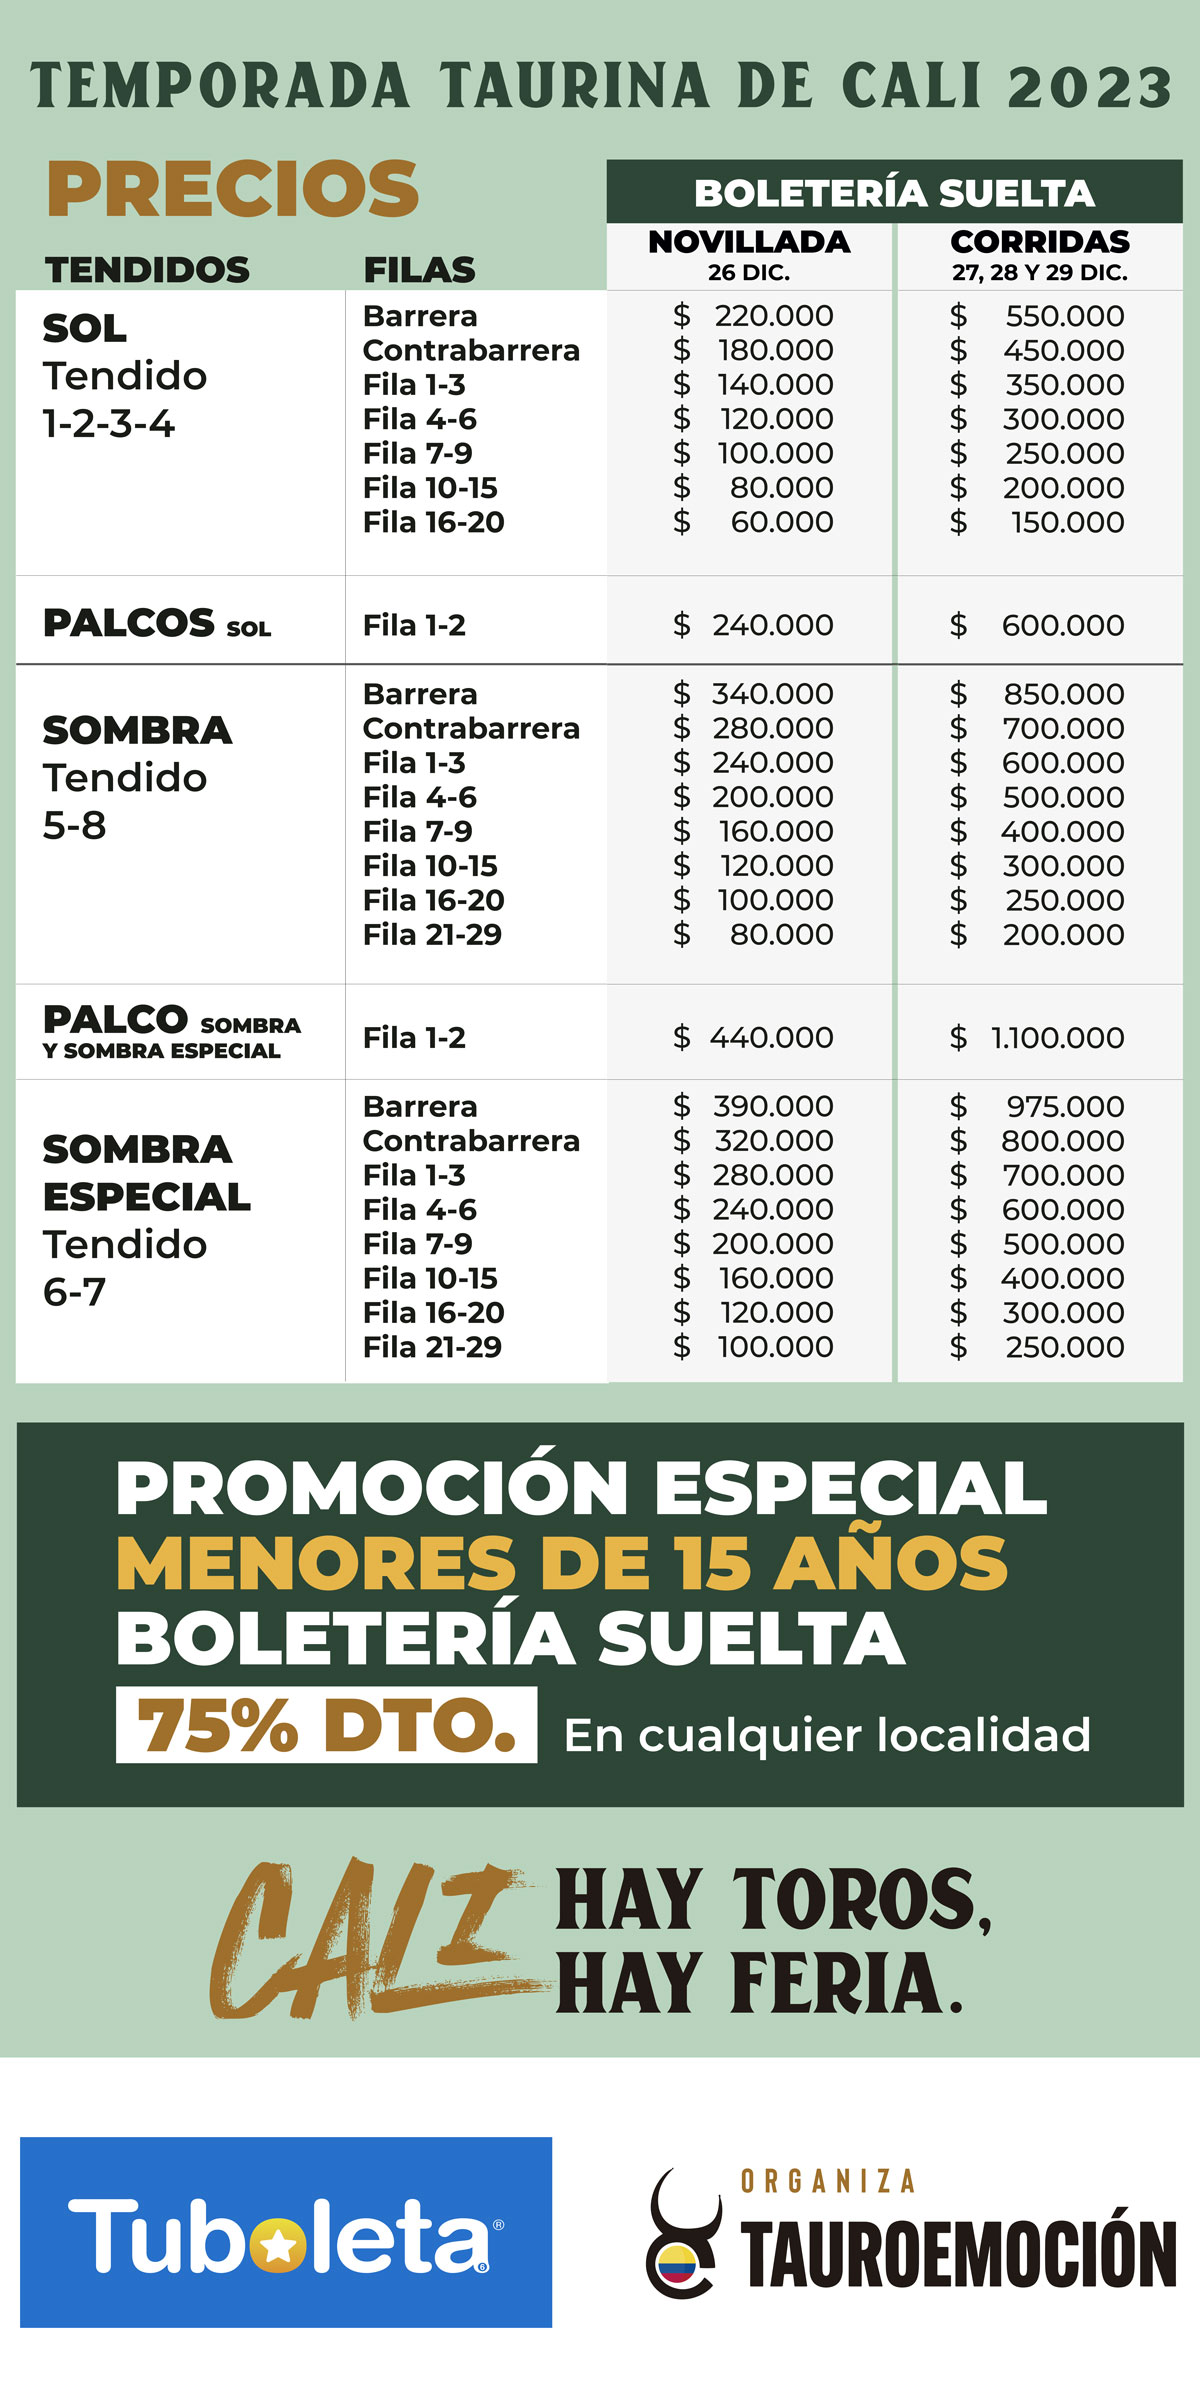 precios-boleteria-cali-2023-total